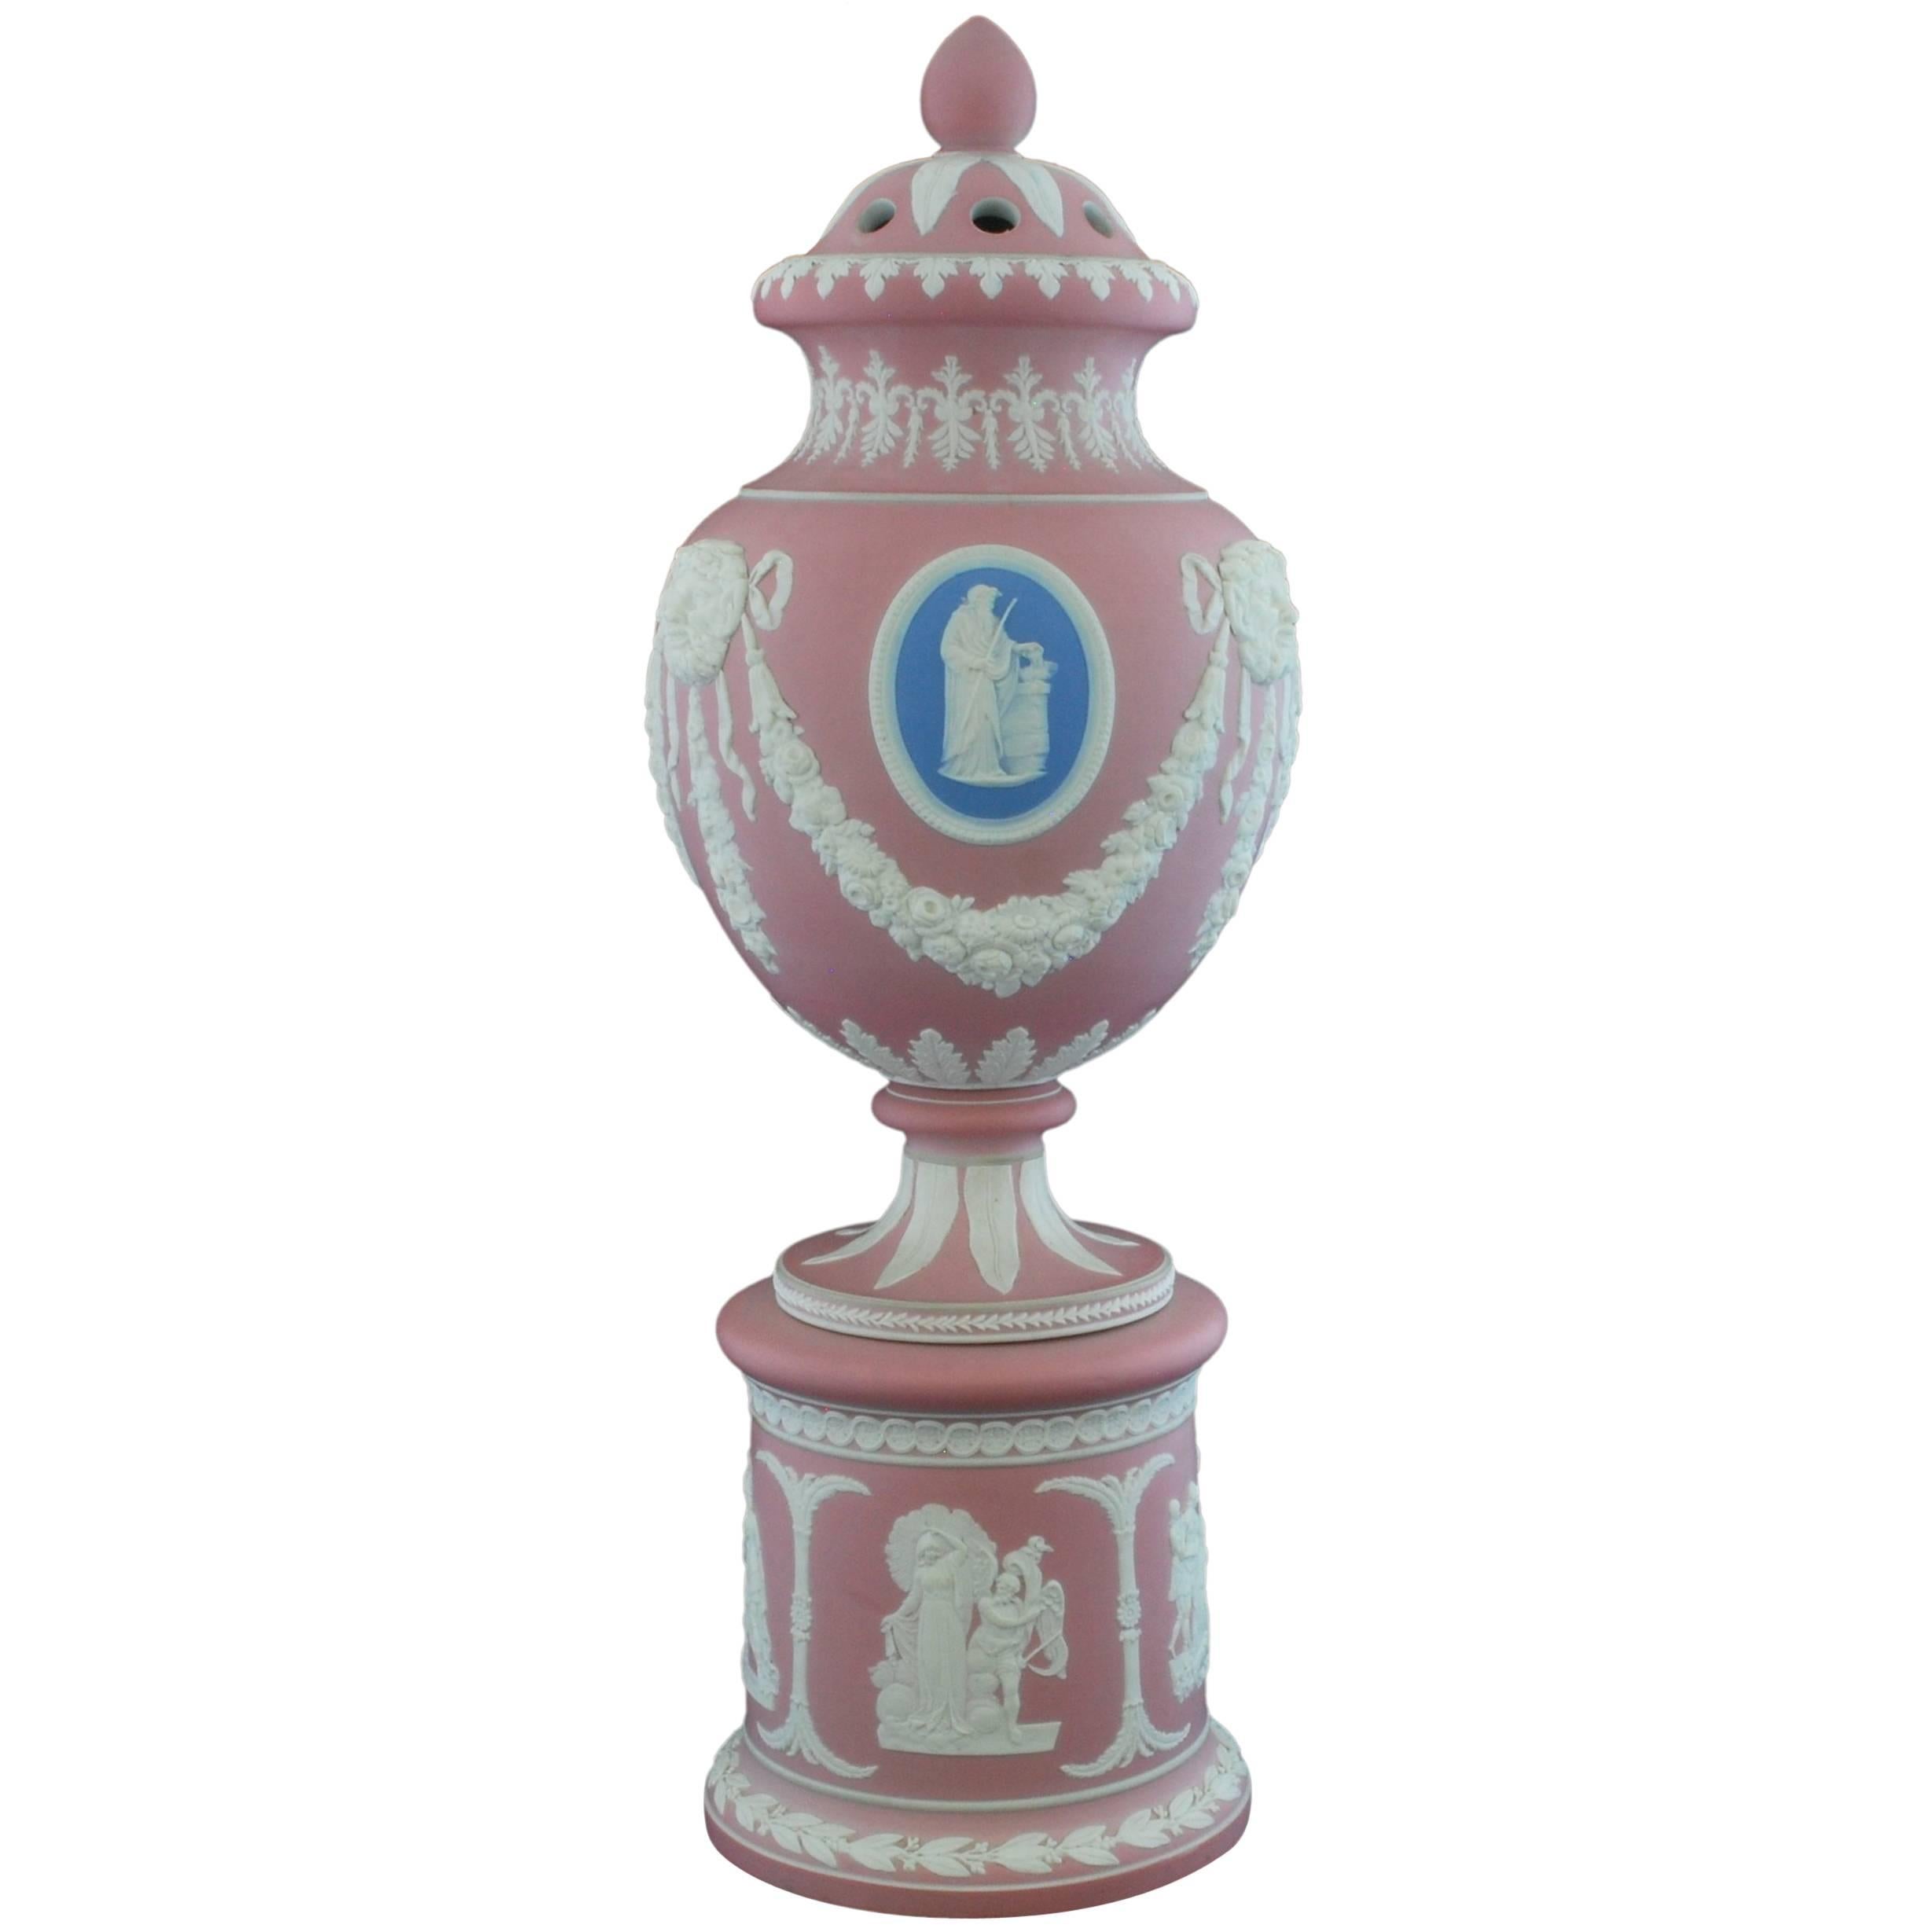 Potpourri Vase, Tricolor, Dudson, circa 1850